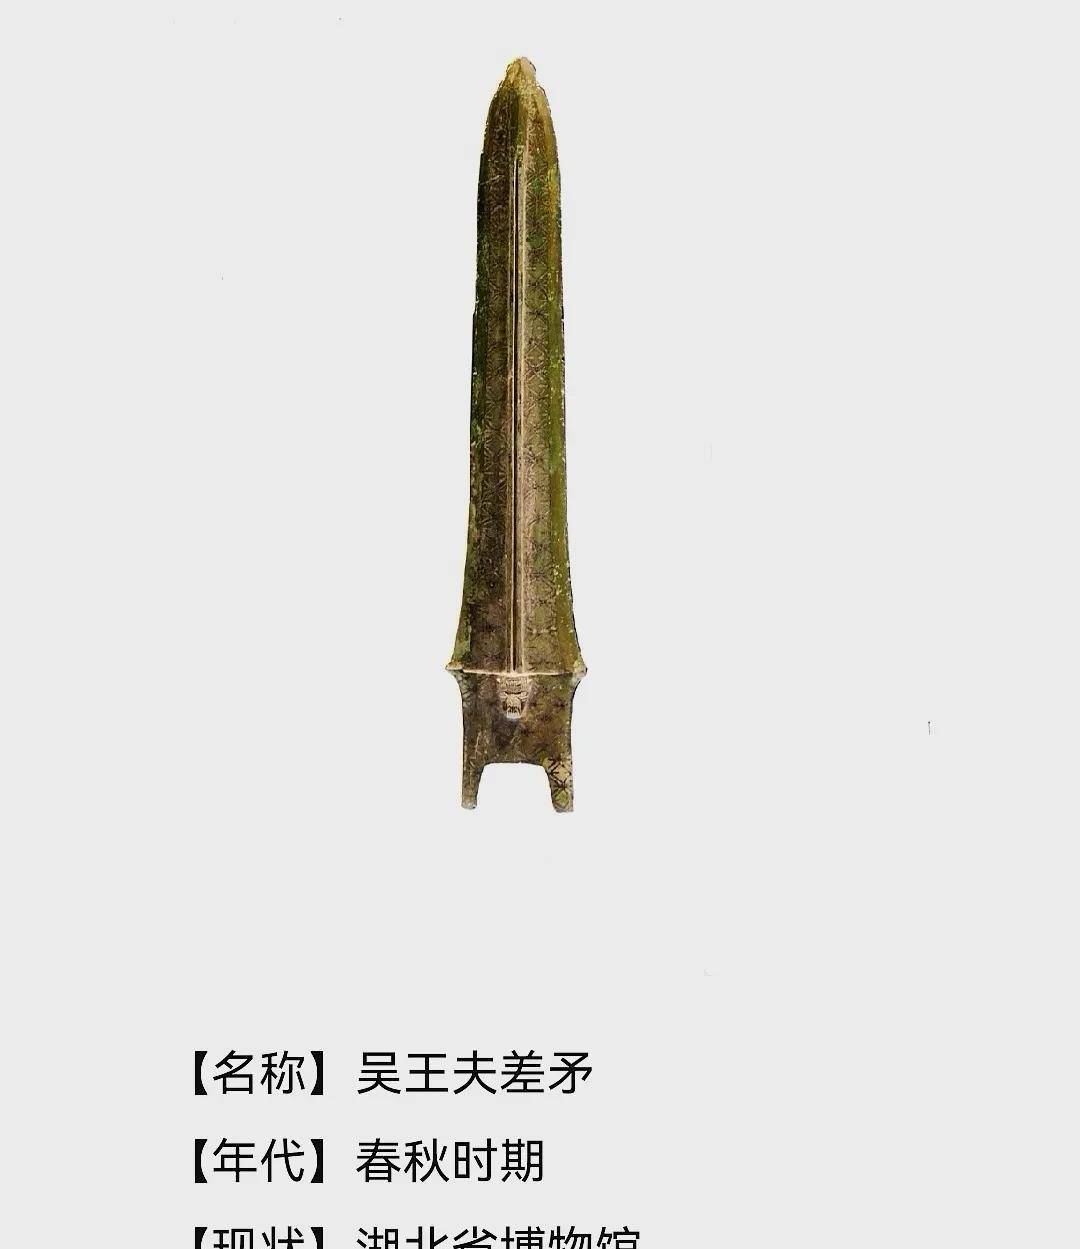 吴王夫差矛1983年11月,在距出土越王勾践剑的望山1号墓两公里处的另一